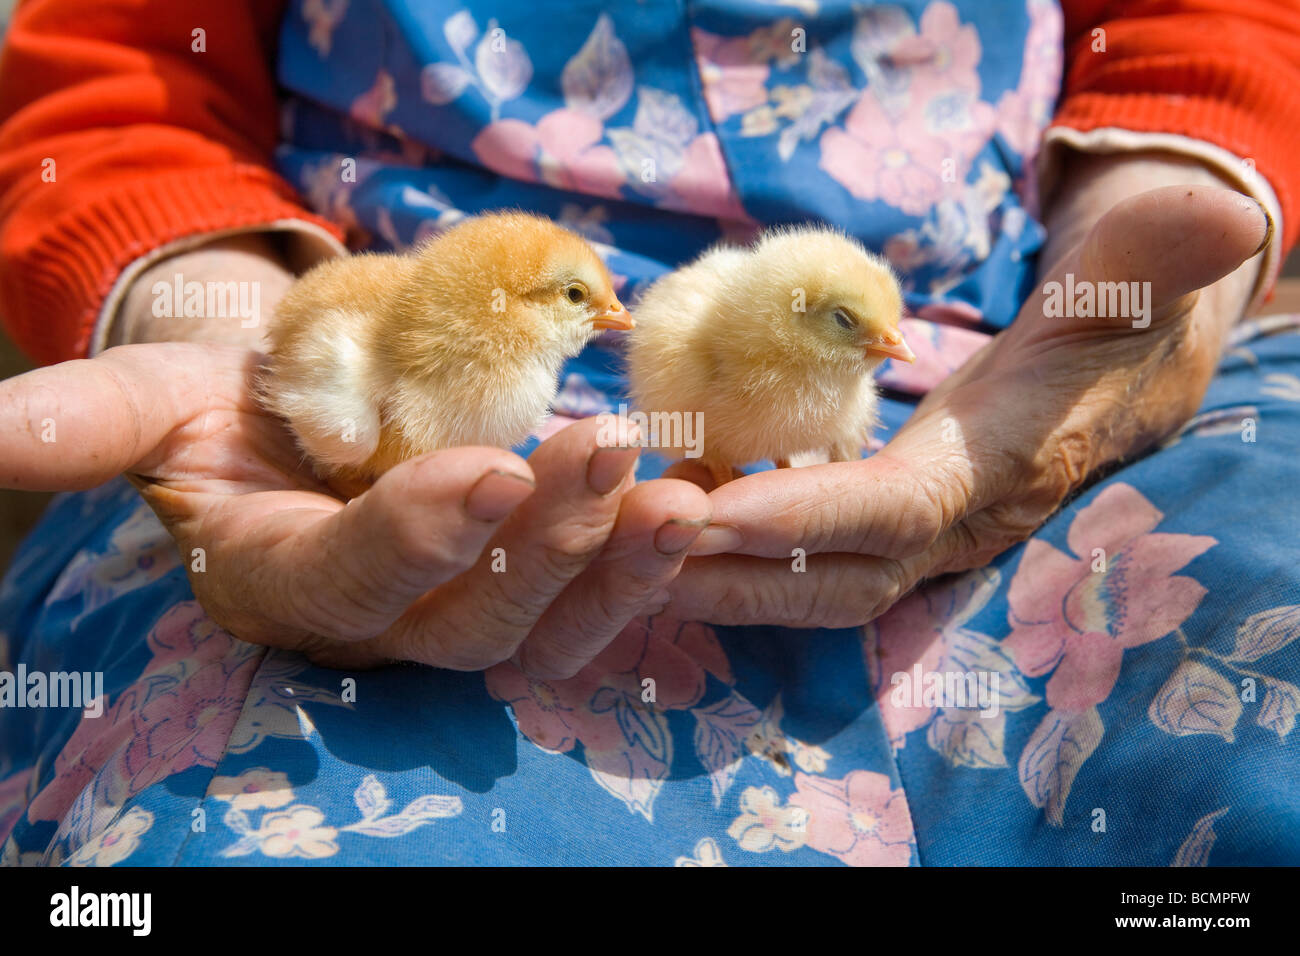 Vieux Paysan woman holding poulet dans ses mains ridées Banque D'Images